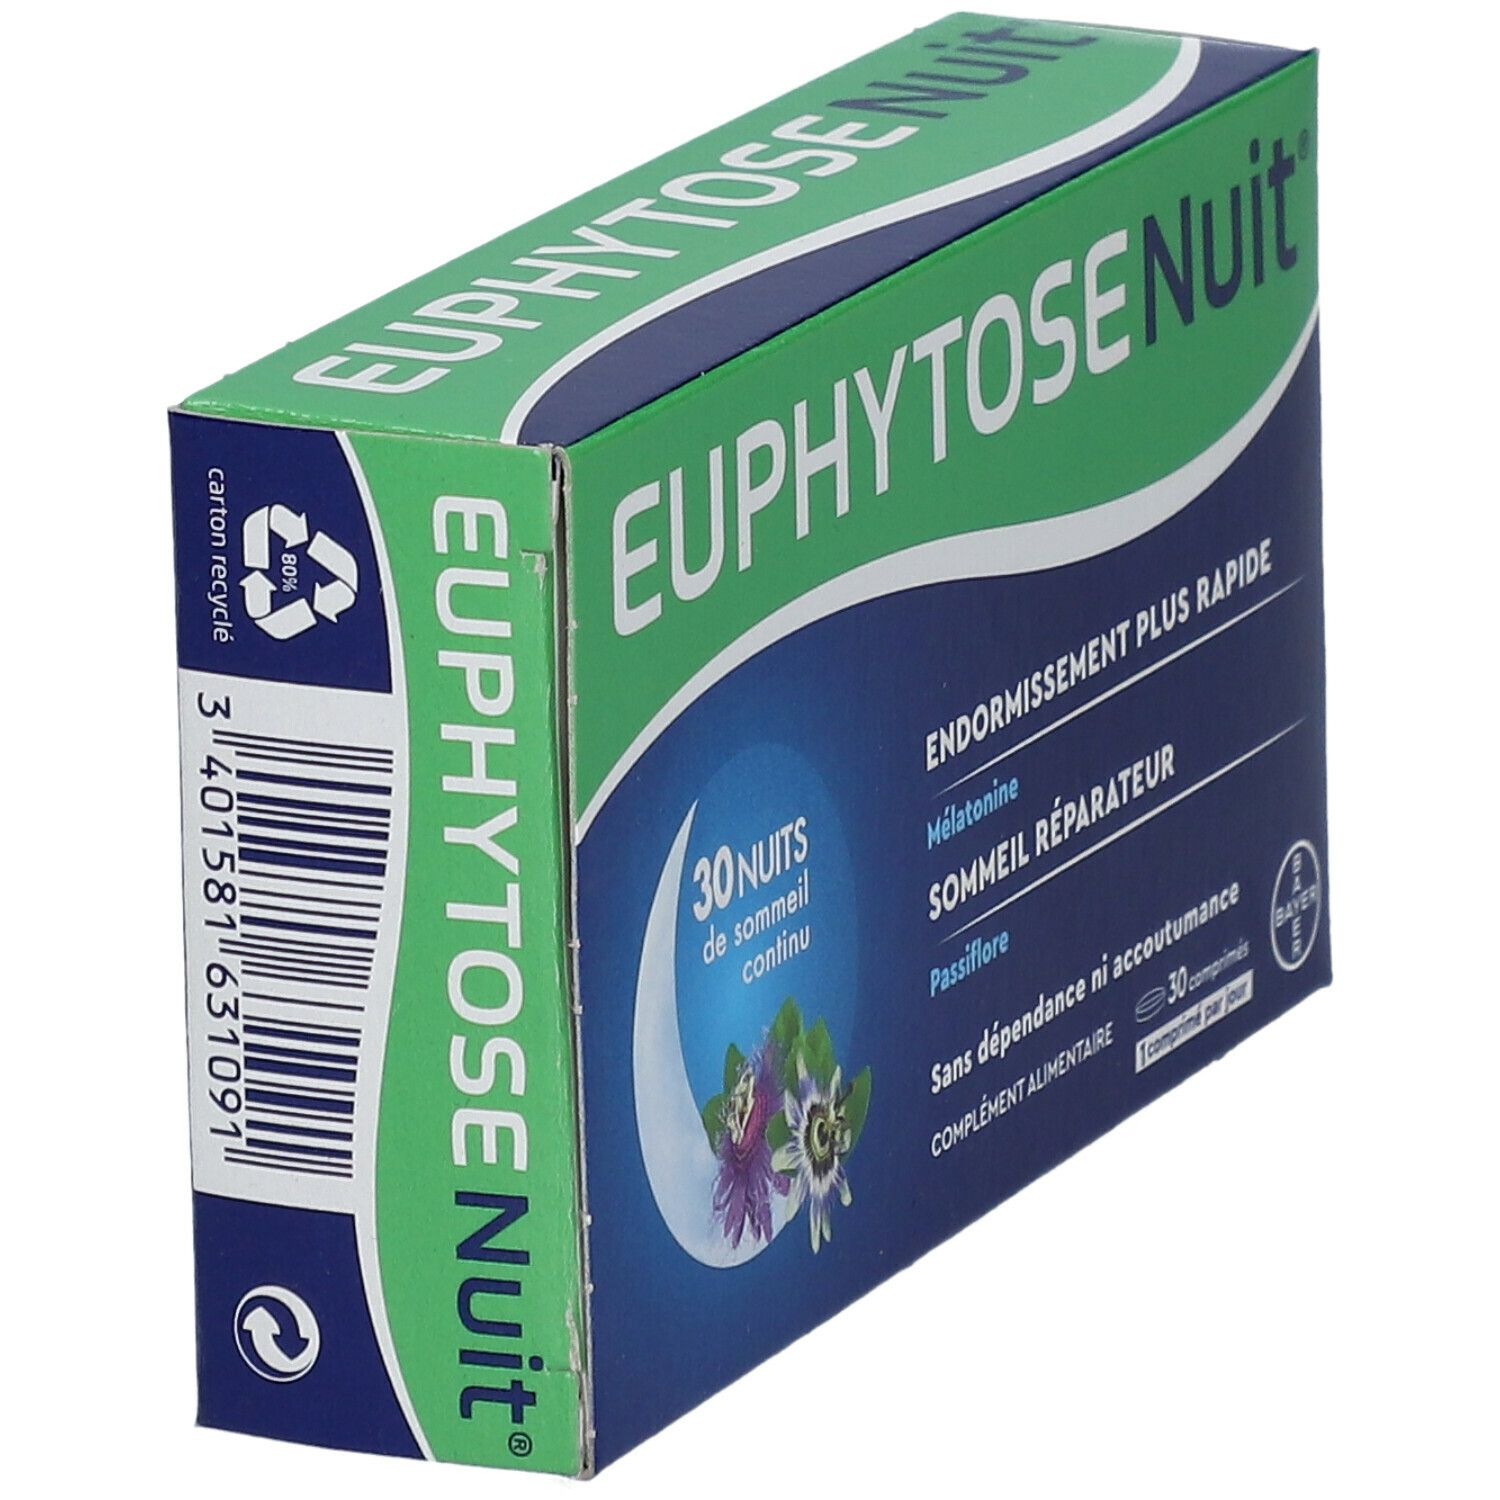 Euphytose Nuit comprimé pour dormir - Mélatonine - Passiflore